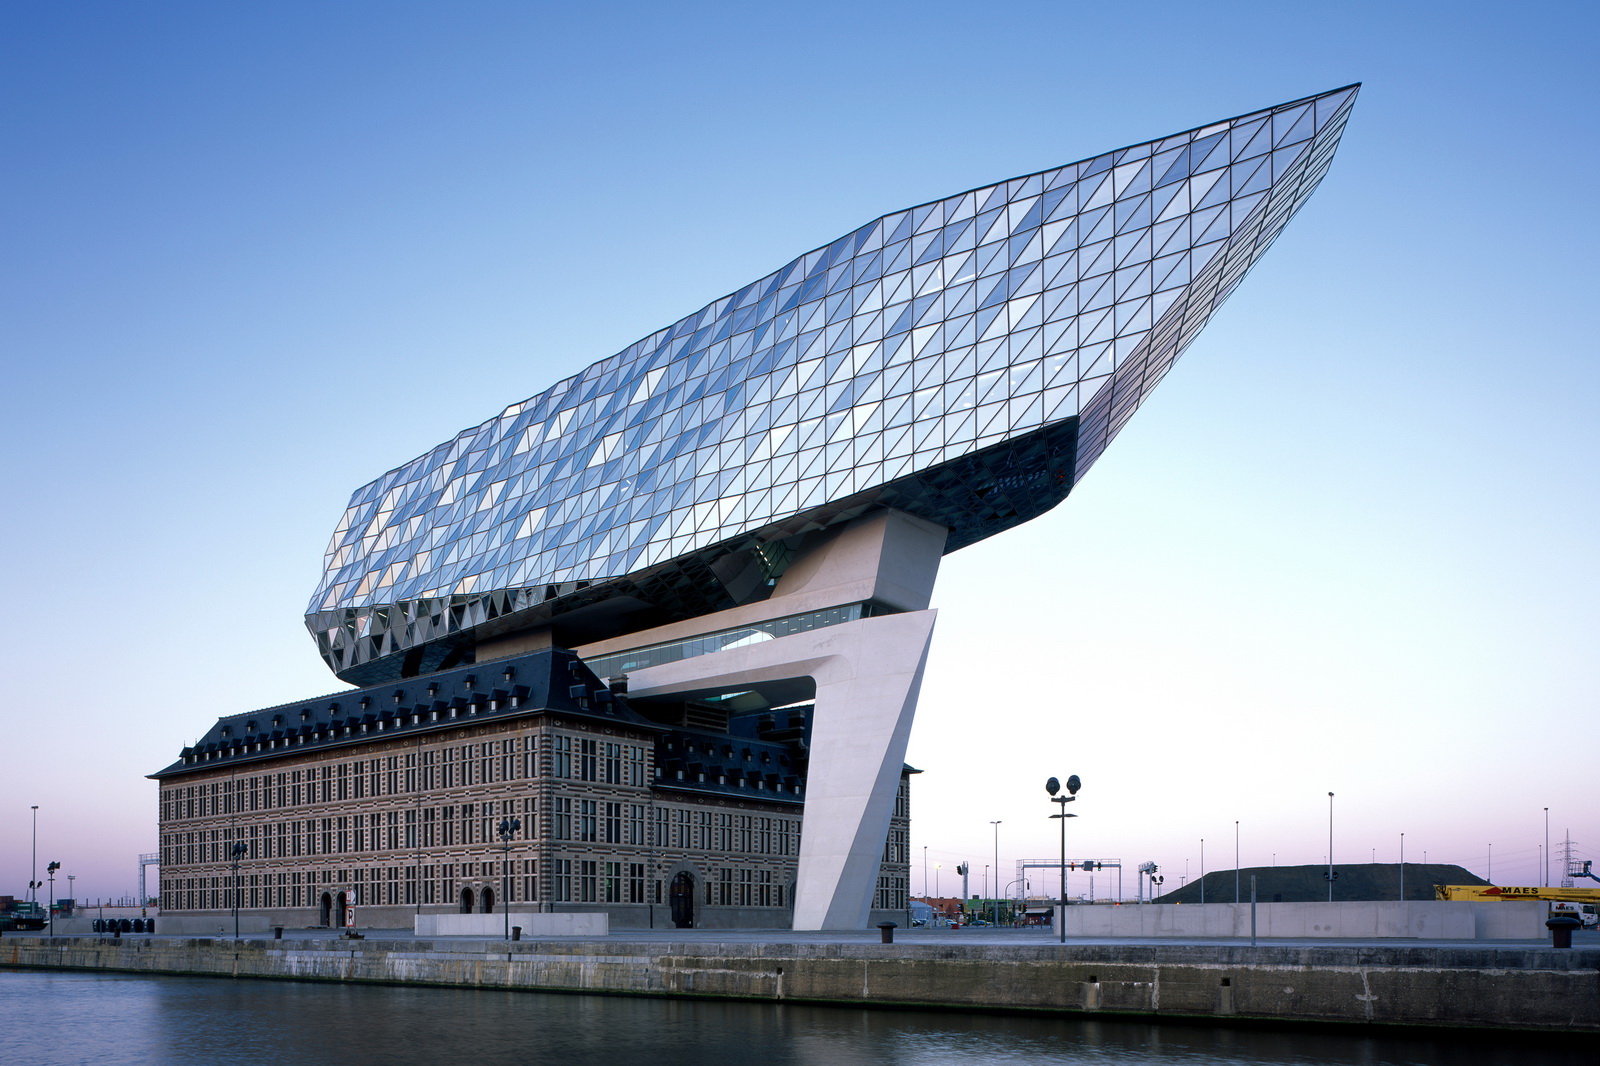 Mát mắt trước kiến trúc hình con tàu kim cương ở Bỉ